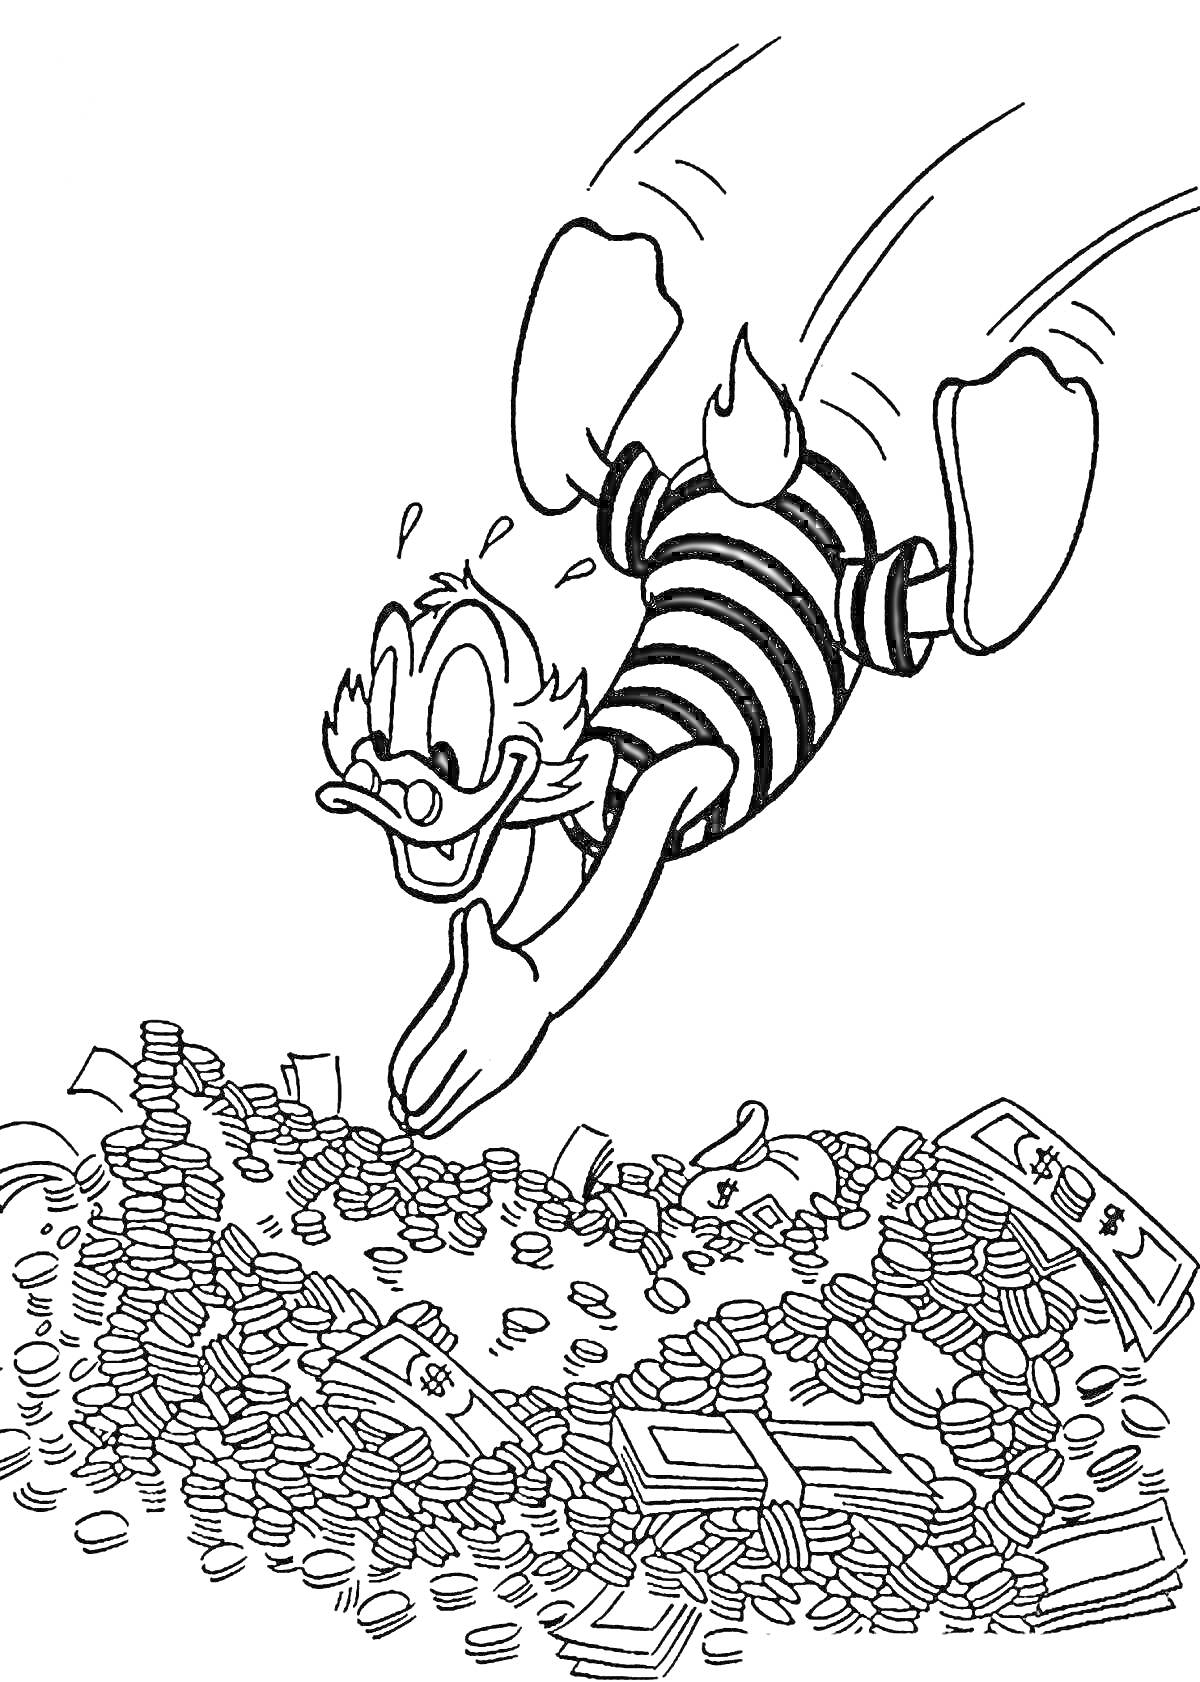 РаскраскаСкрудж Макдак ныряющий в кучу монет и банкнот